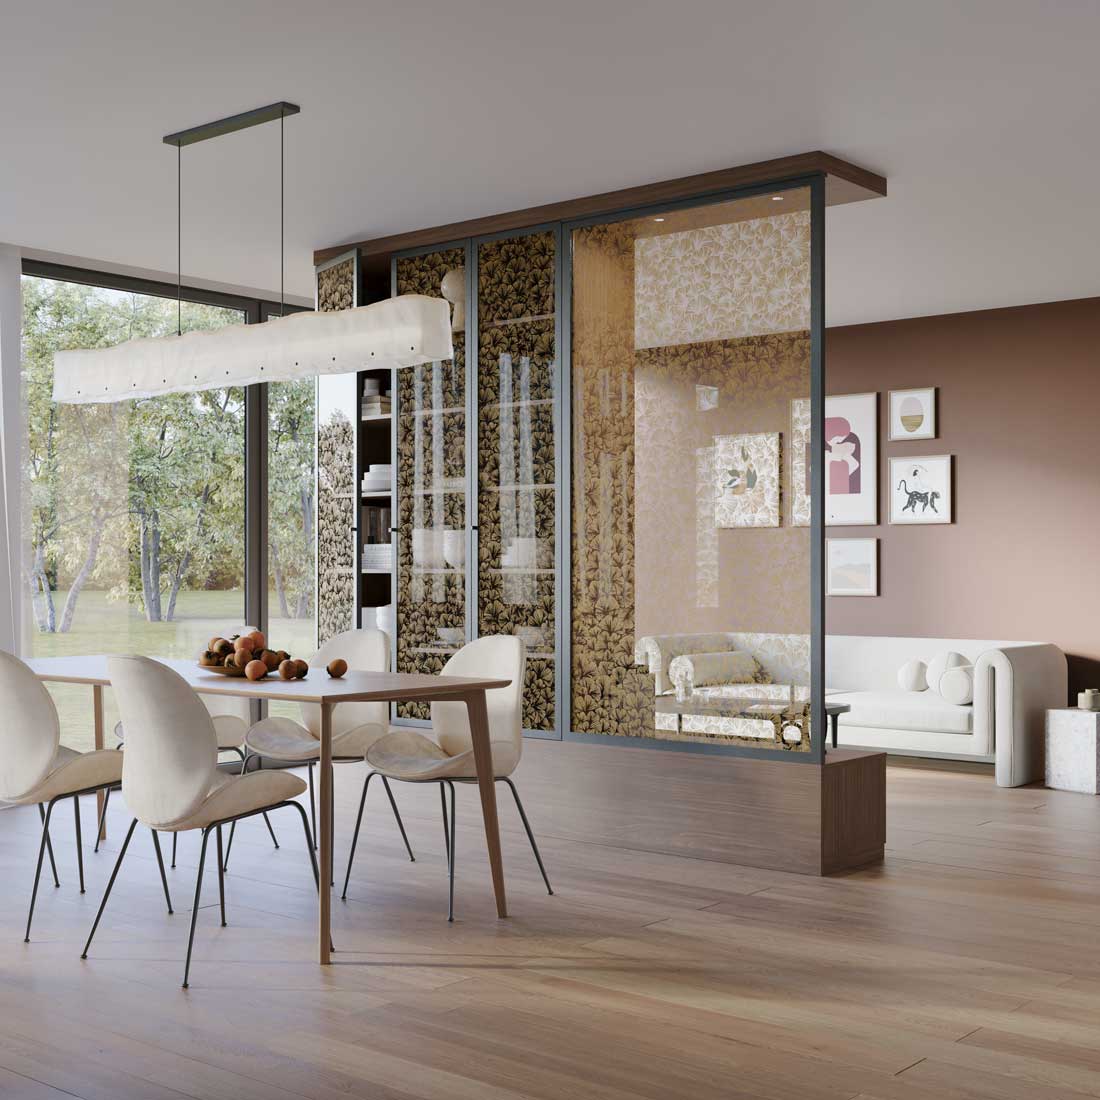 Image 3D réaliste d'une salle à manger avec bibliothèque et cloison vitrée donnant sur le salon.